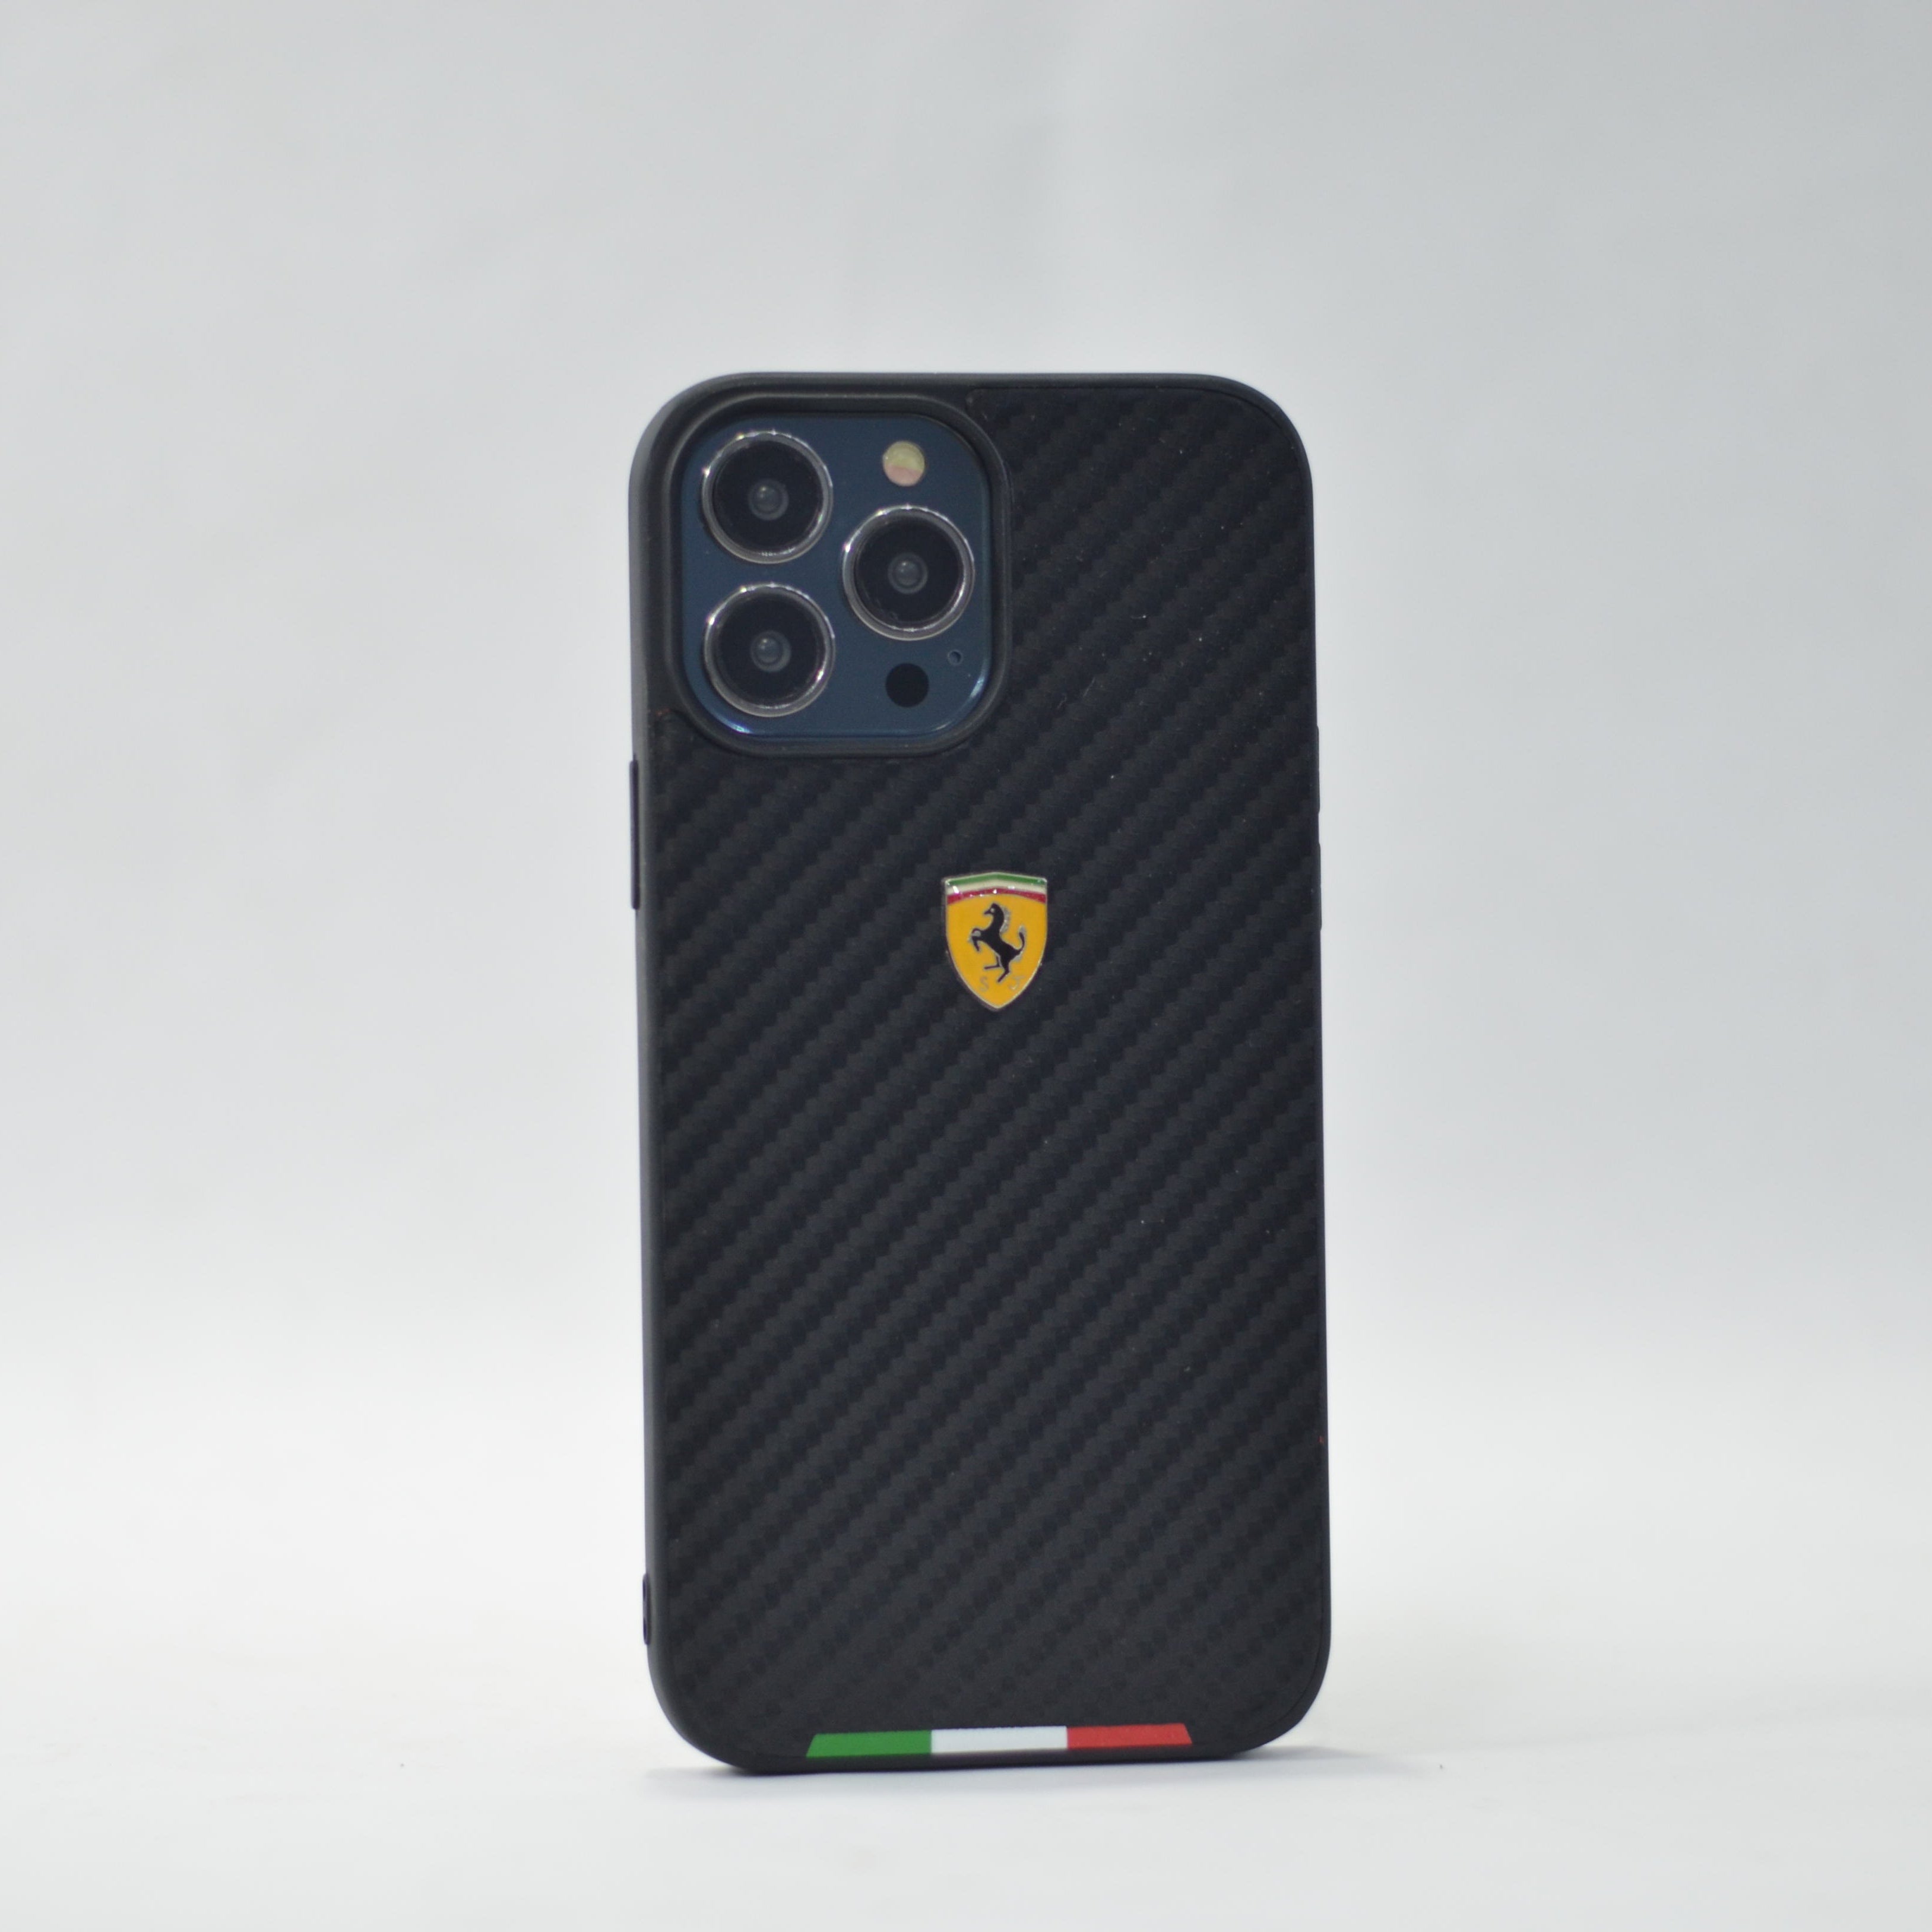 For iP 13 Pro Max Ferrari Carbon Fiber Covers